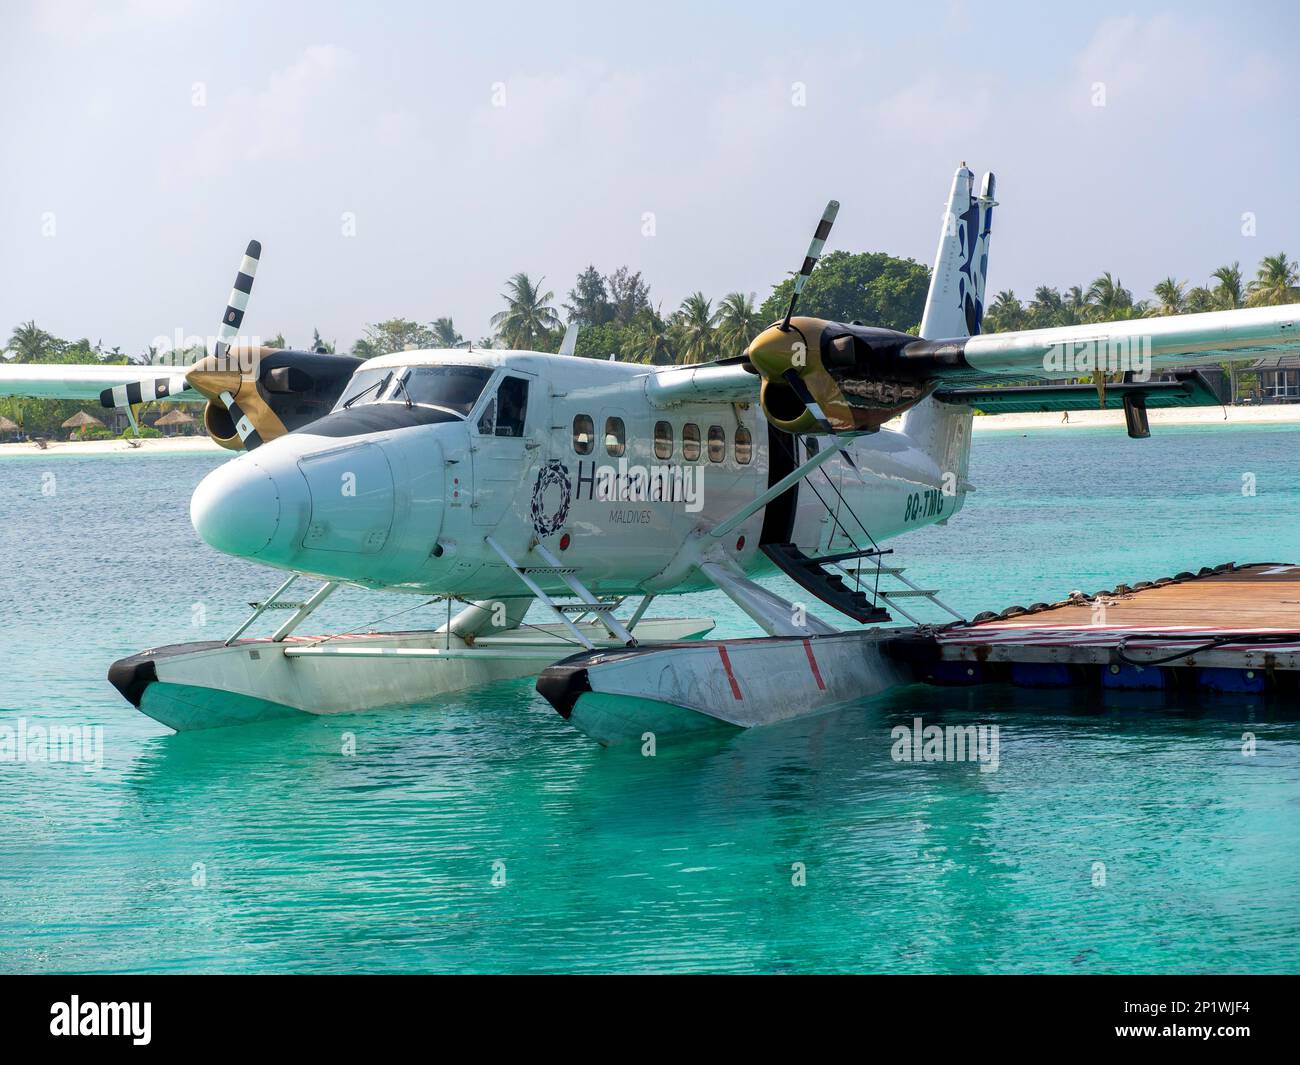 Ferieninsel auf den Malediven, mit Wasserflugzeug, Malediven, Indischem Ozean, Asien Stockfoto